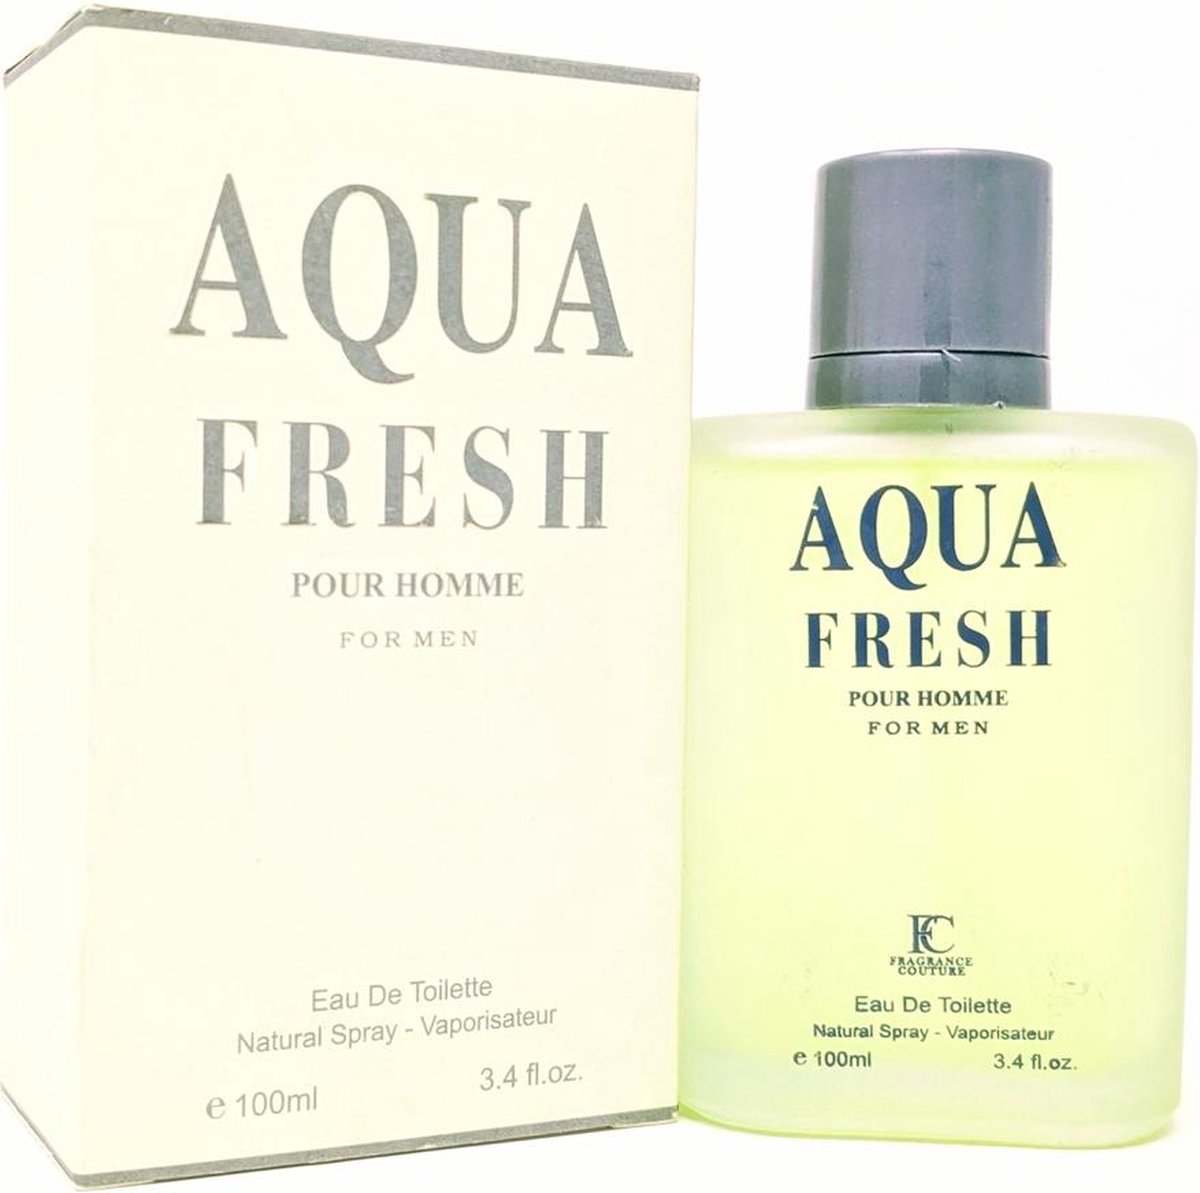 Aqua Fresh for Men